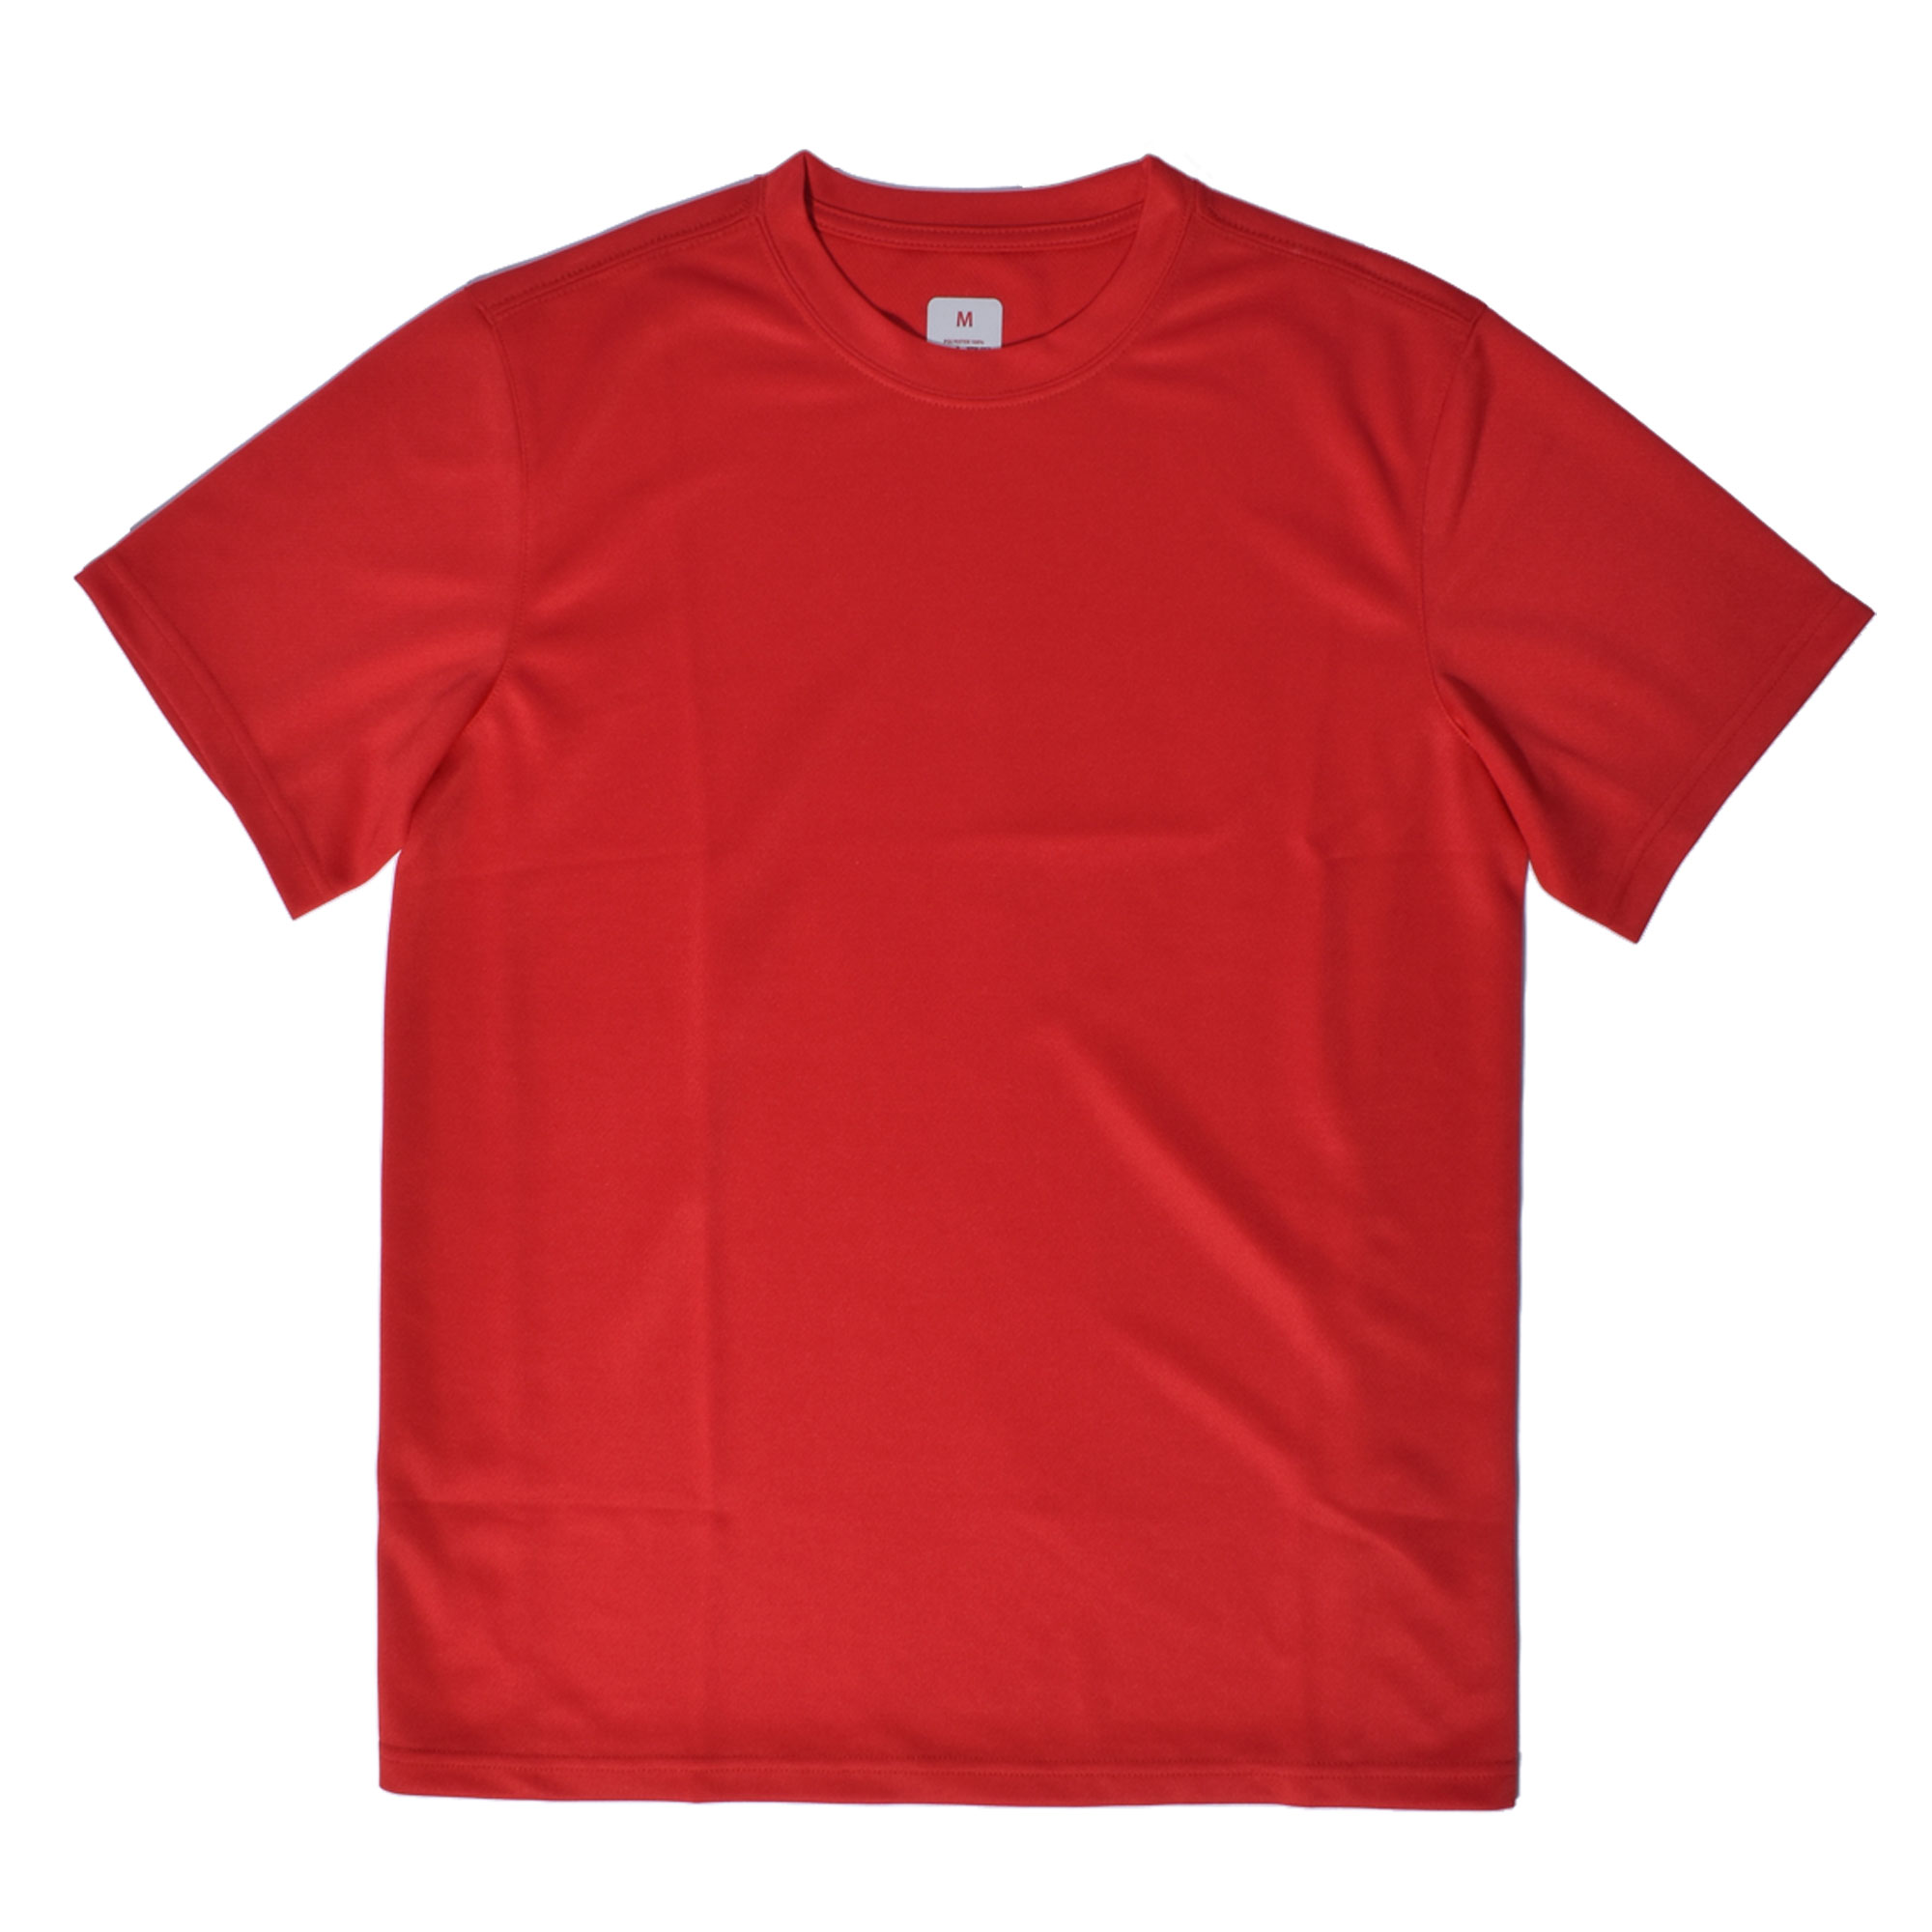 ウエア メンズ オリジナルランニングTシャツ 黒 レッド 赤 青 ピンク スポールウエア 半袖